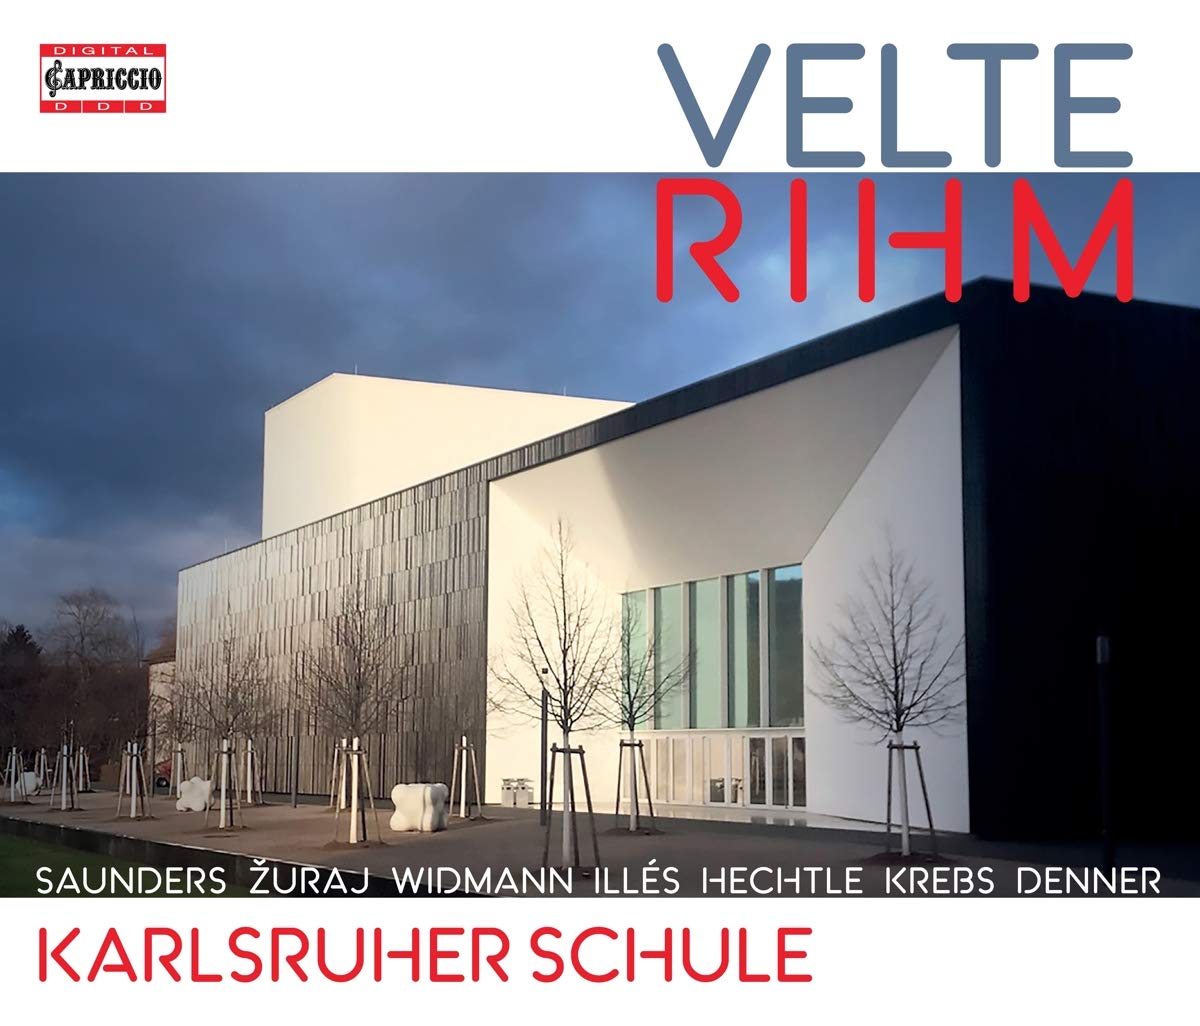 Audio Cd Wolfgang Rihm / Eugen Werner Velte - Karlsruher Schule (3 Cd) NUOVO SIGILLATO, EDIZIONE DEL 16/02/2021 SUBITO DISPONIBILE